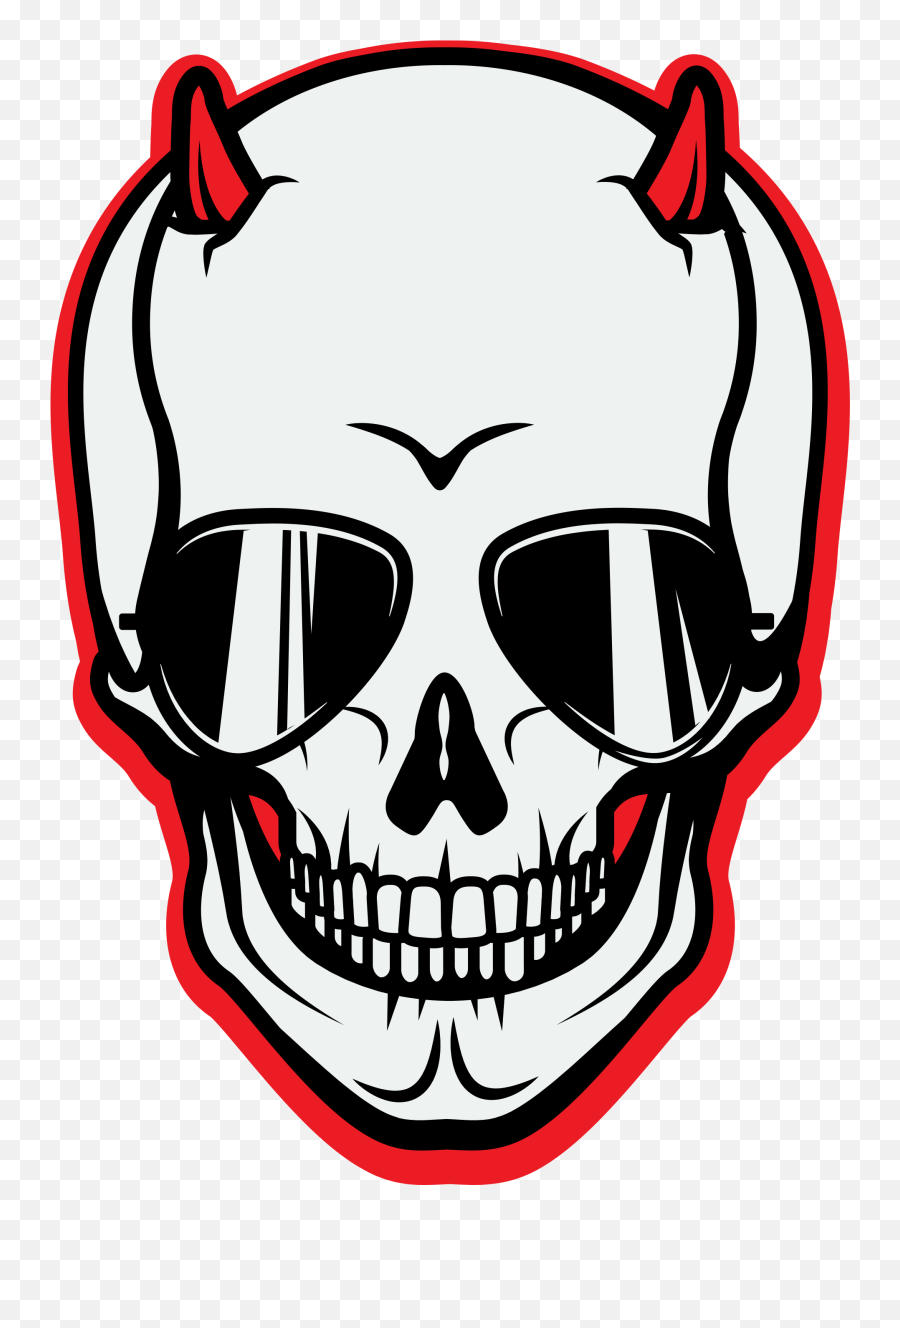 Download Real Rocker Red Ale - Skull Png Image With No Rocker Skull Png,Rocker Png